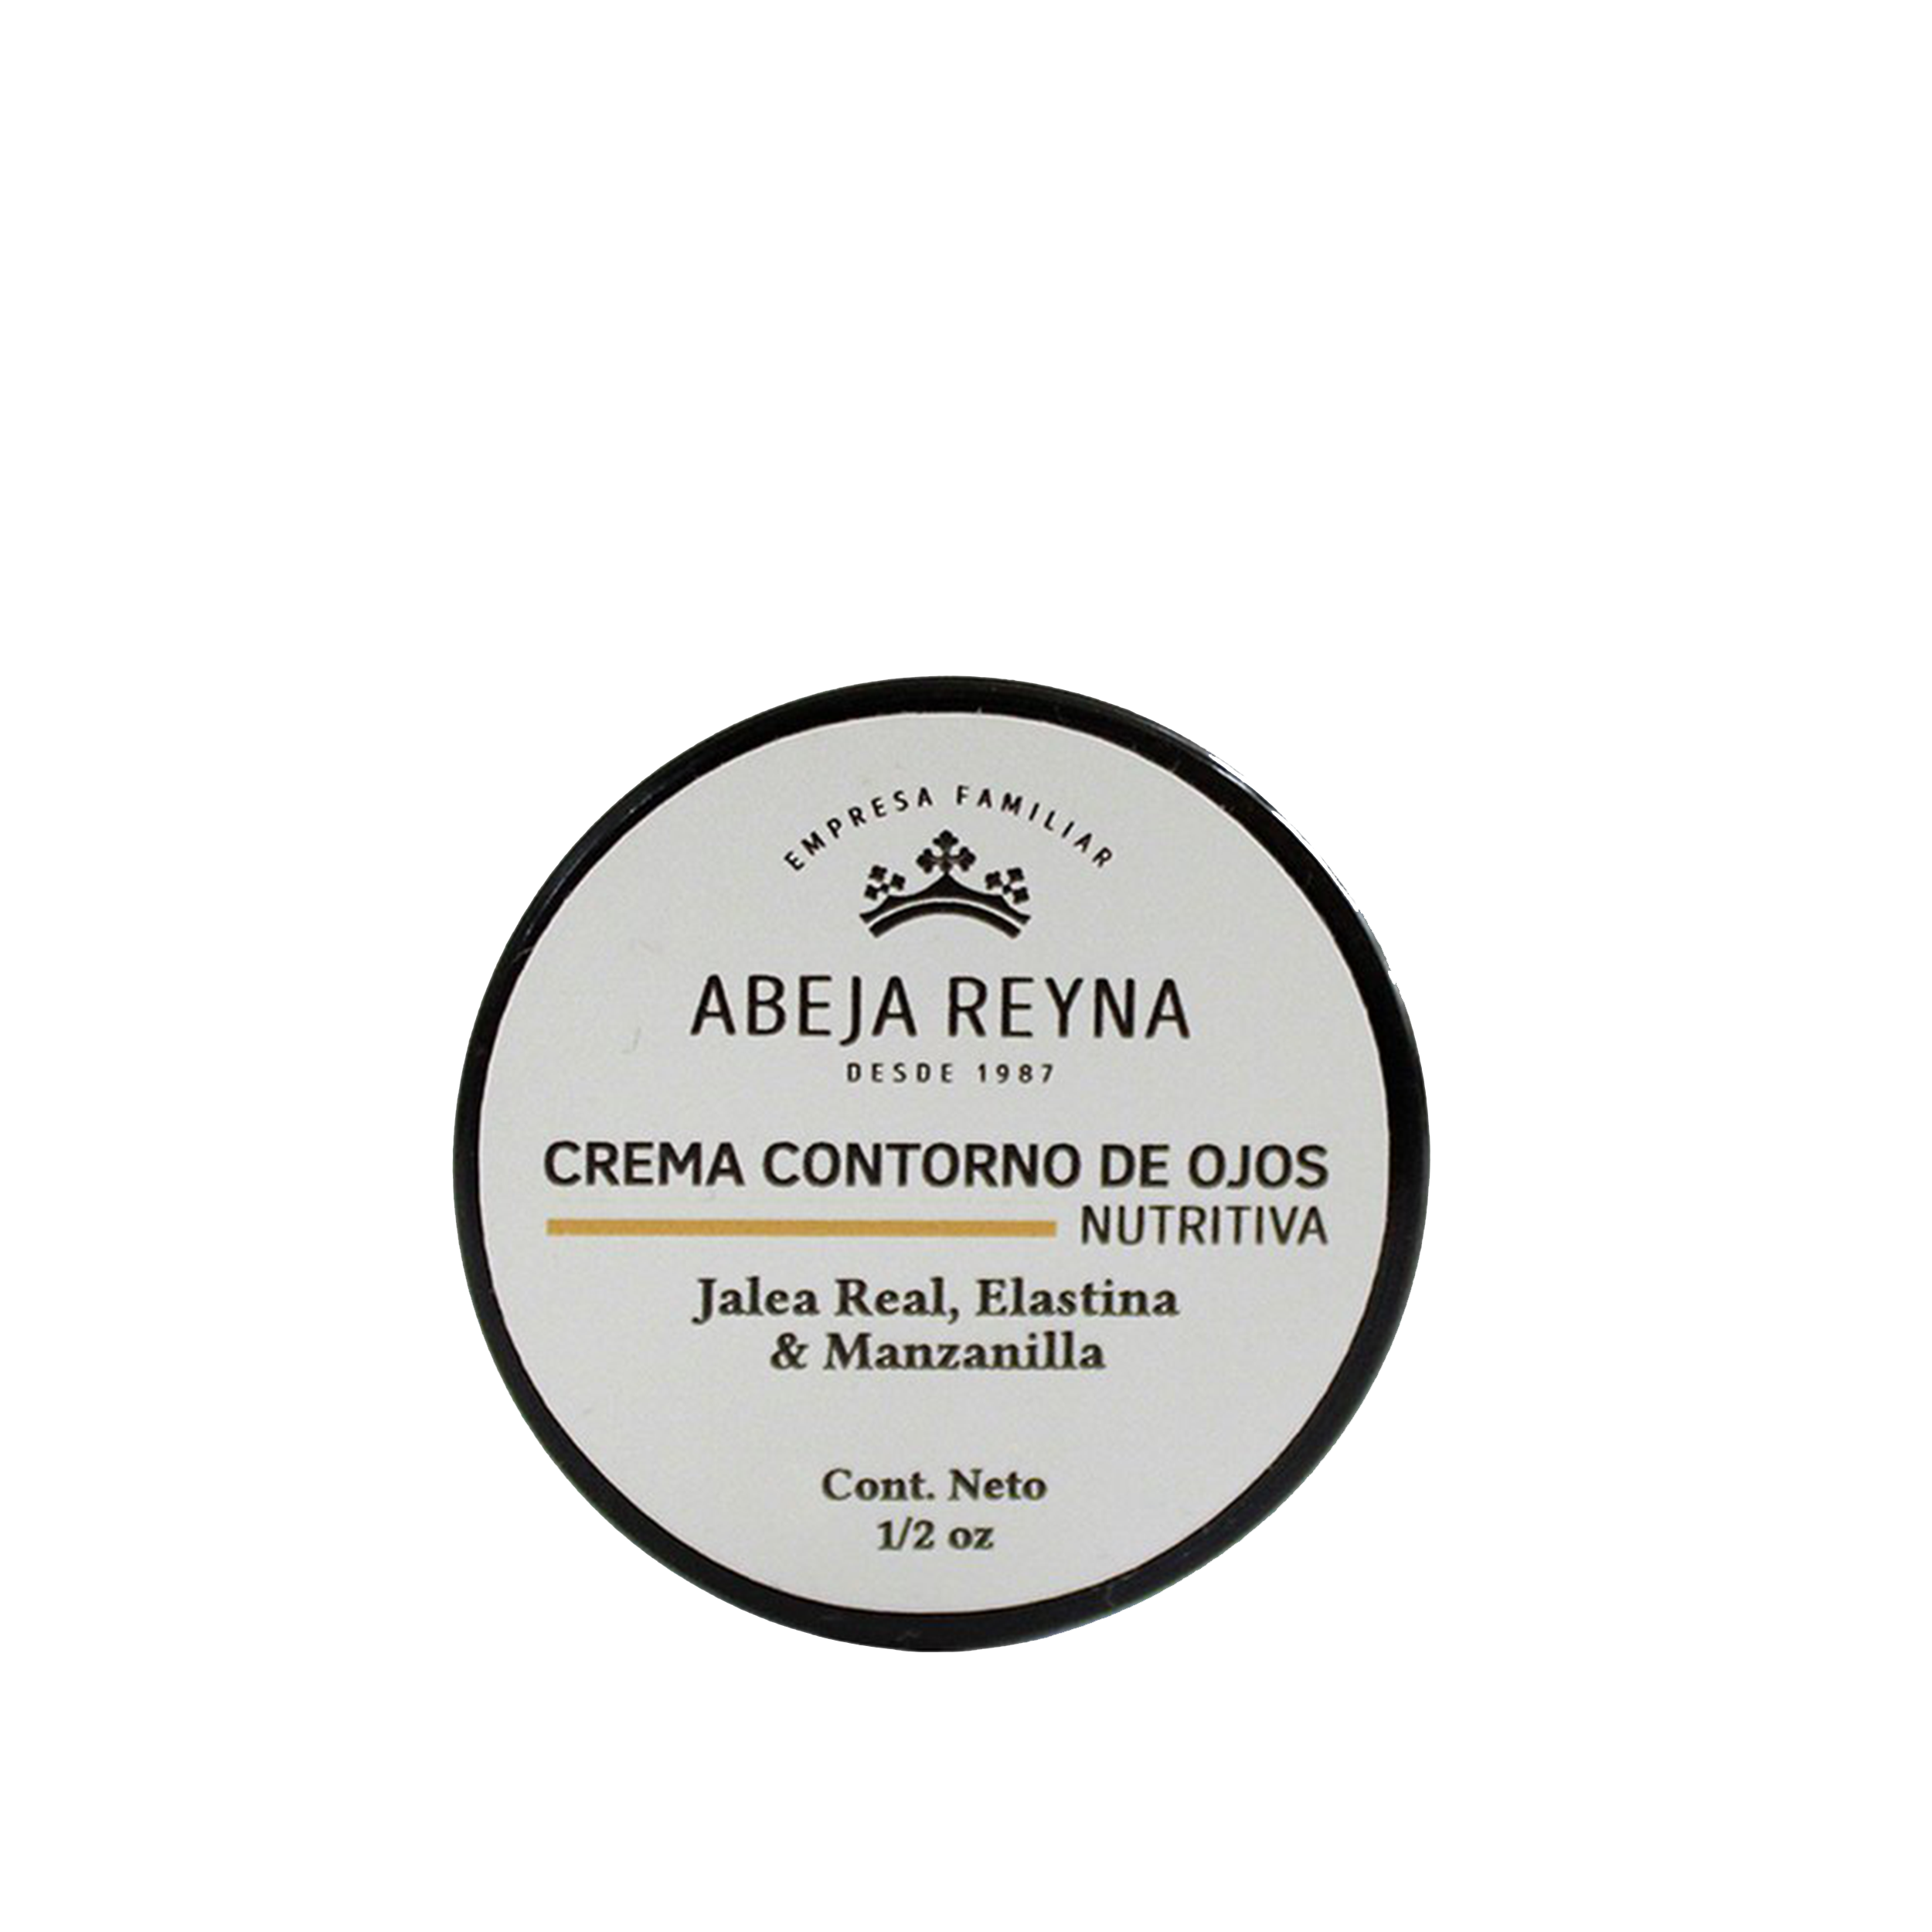 Abeja Reyna- Crema contorno de ojos